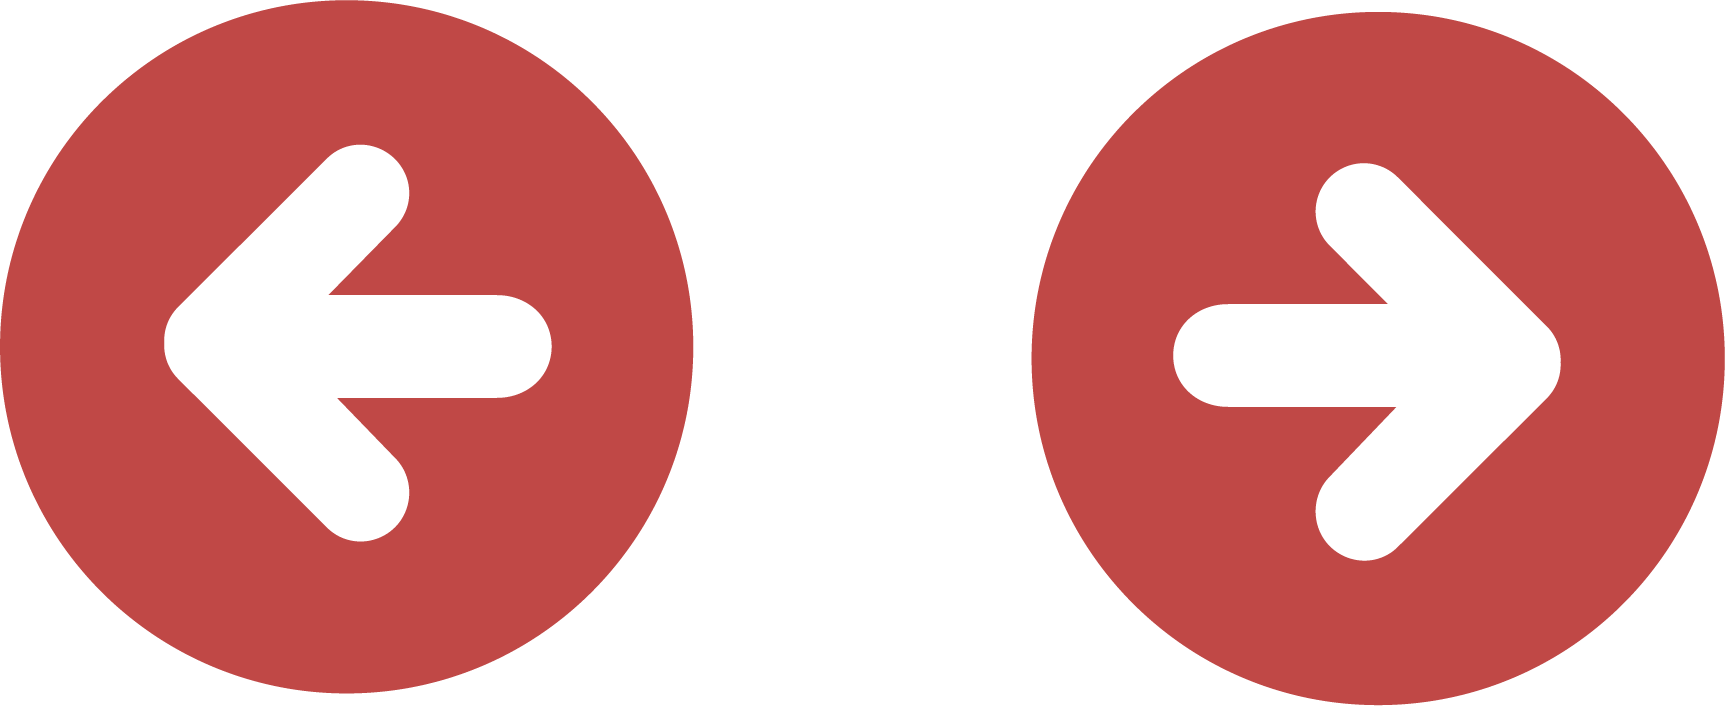 Circle Arrow Logo Icon - Red Arrow Button (1725x706)